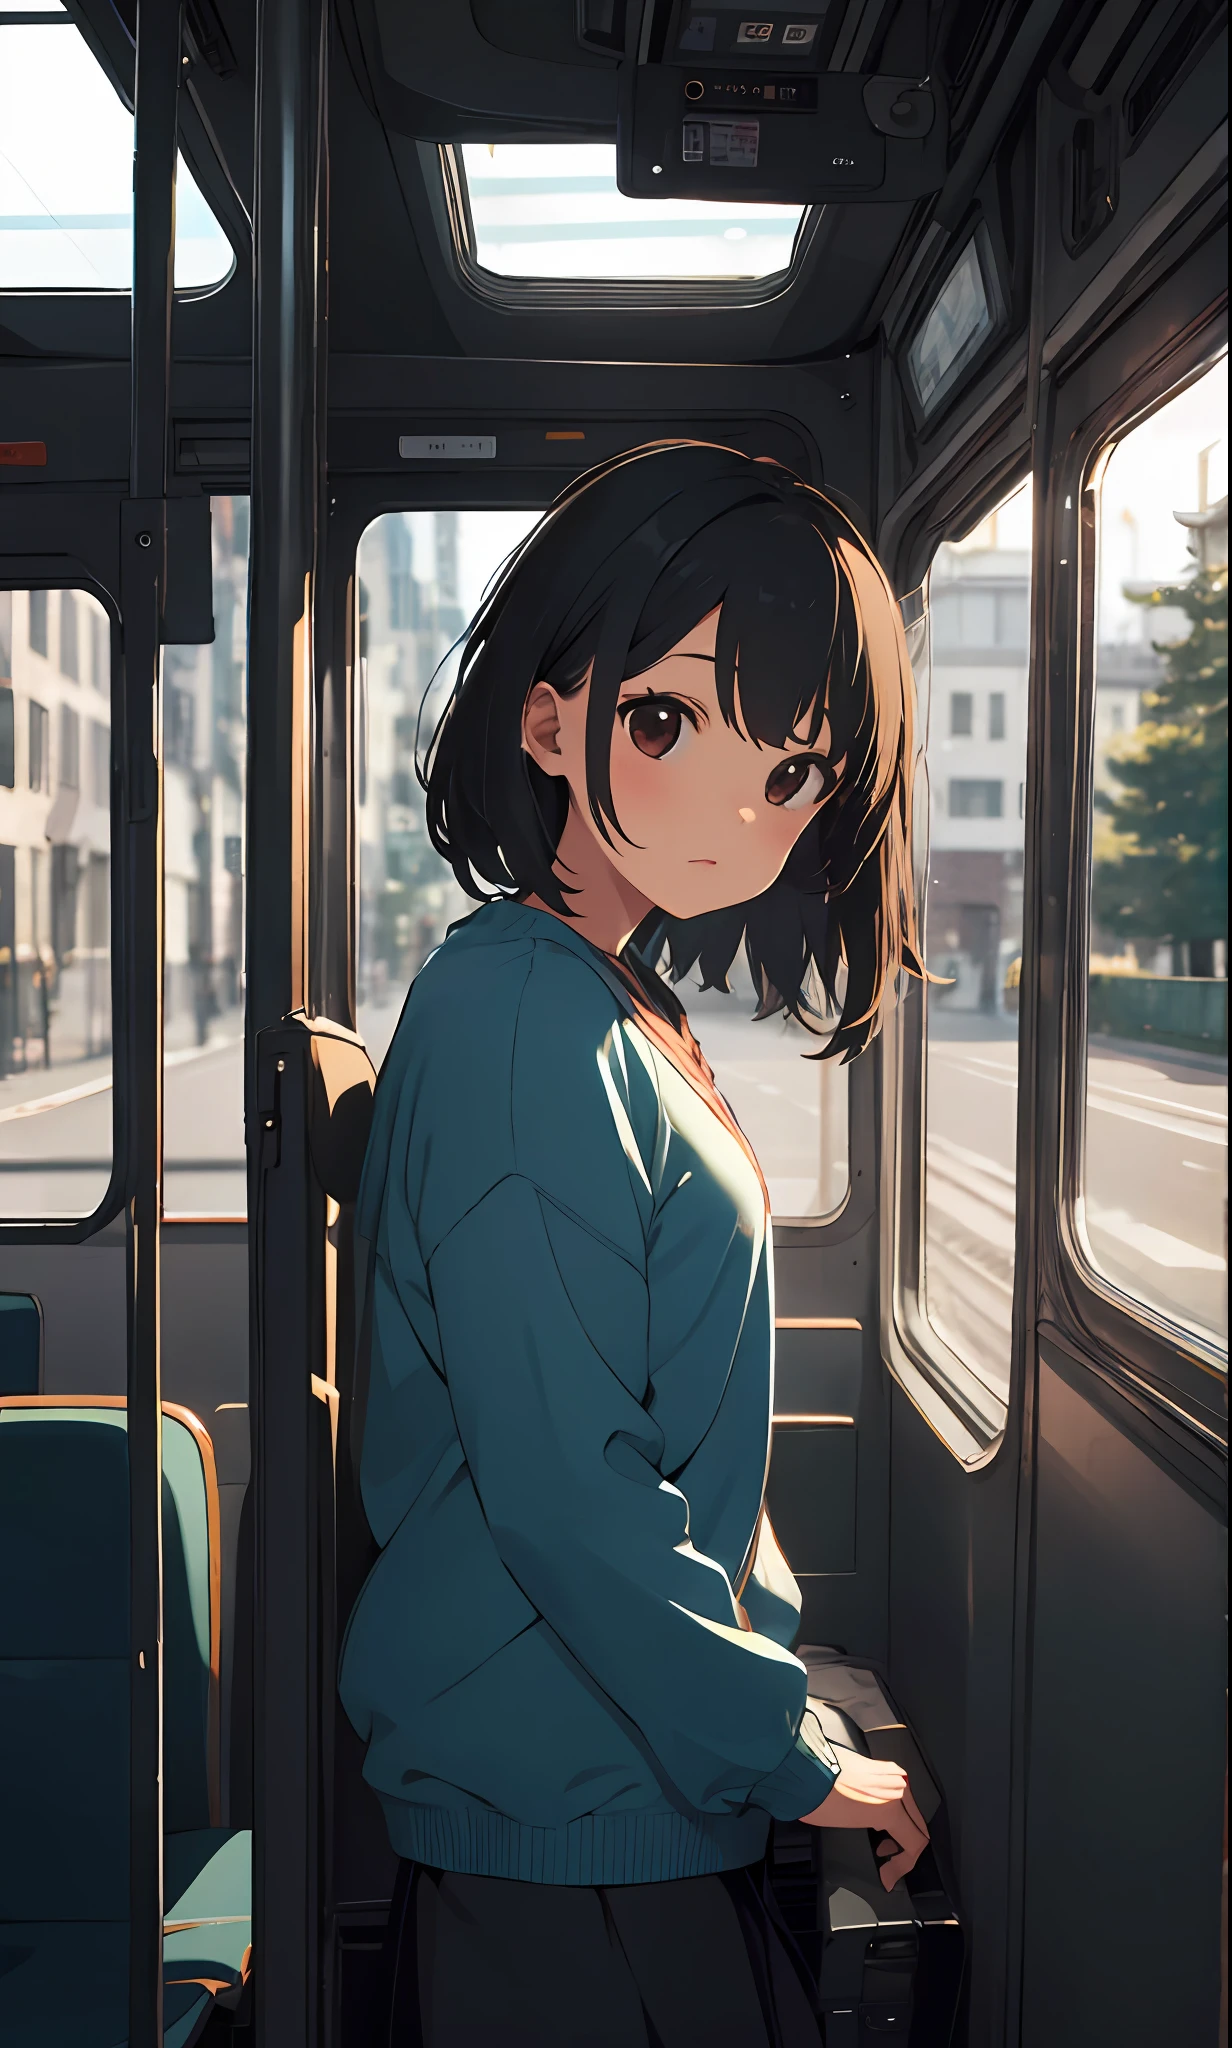 فتاة واحدة, النظر إلى المشهد من داخل الحافلة